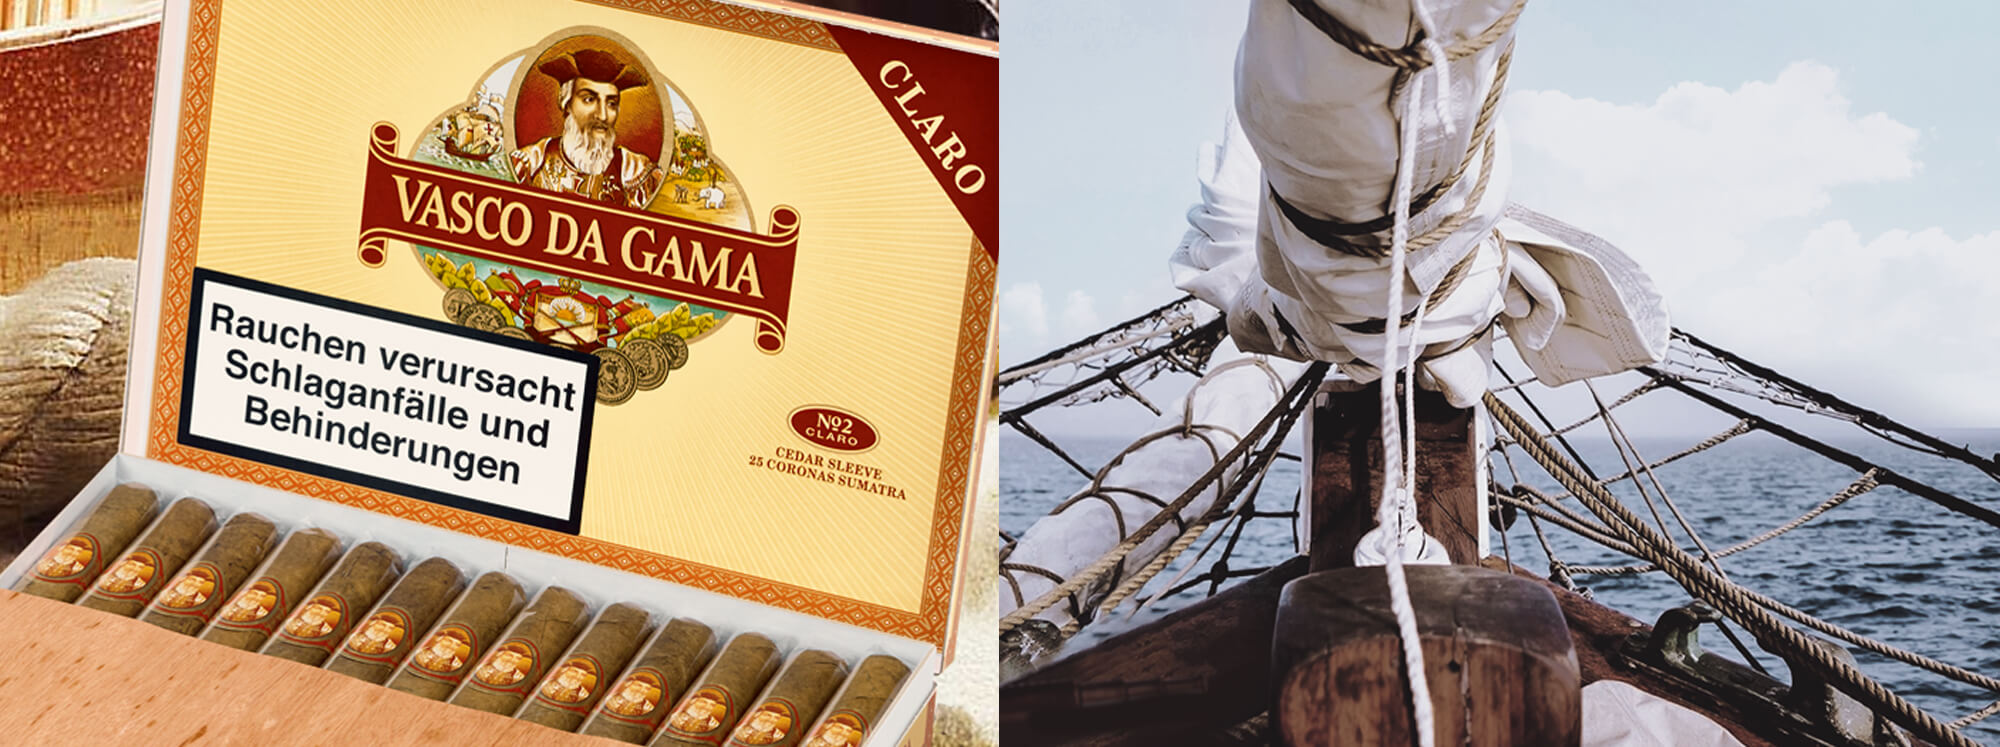 Vasco da Gama Zigarren entdecken